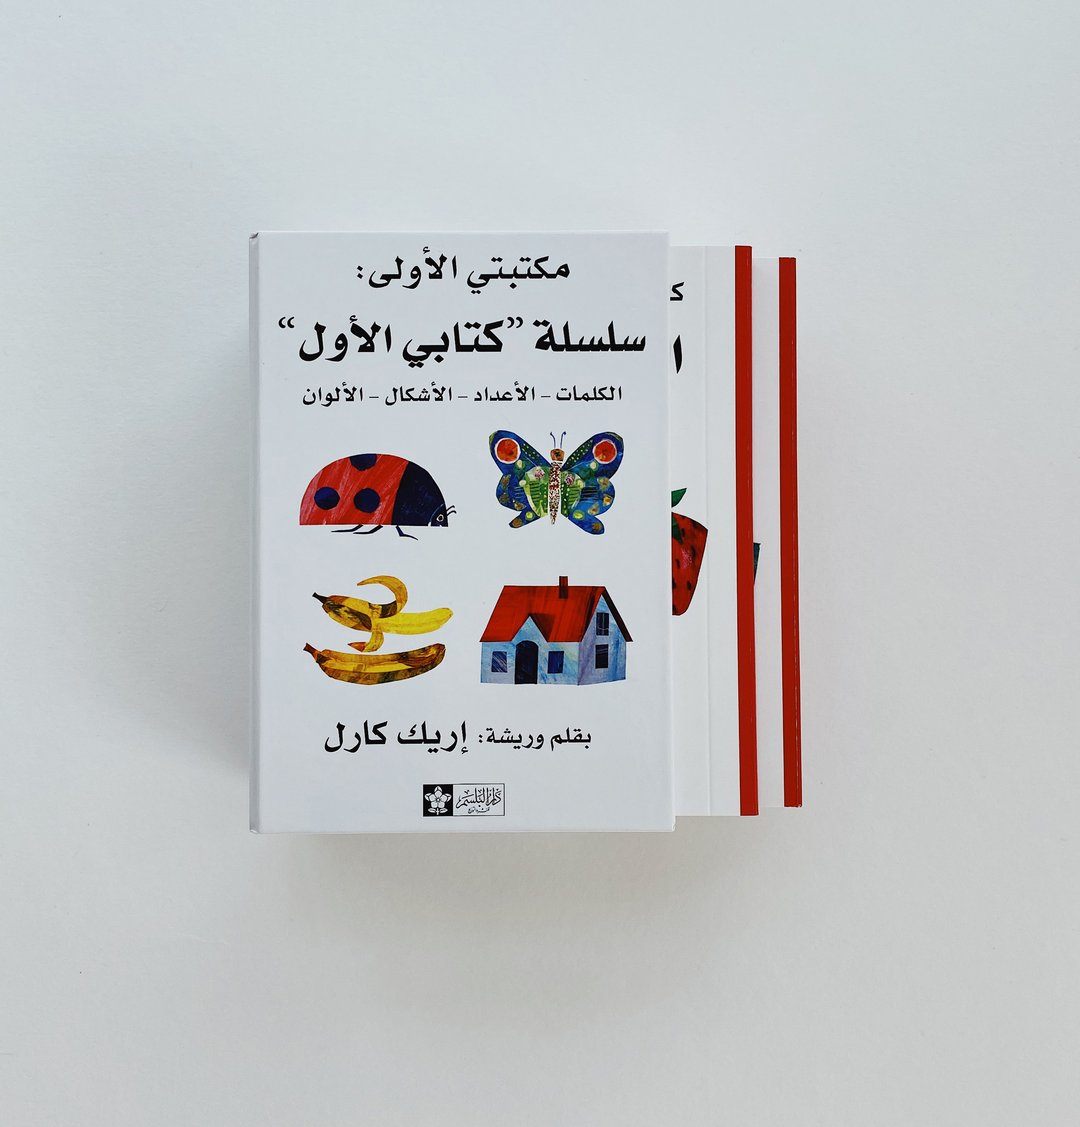 سلسلة كتابى الأول : الكلمات، الأشكال، الأعداد، الألوان كتب أطفال إريك كارل